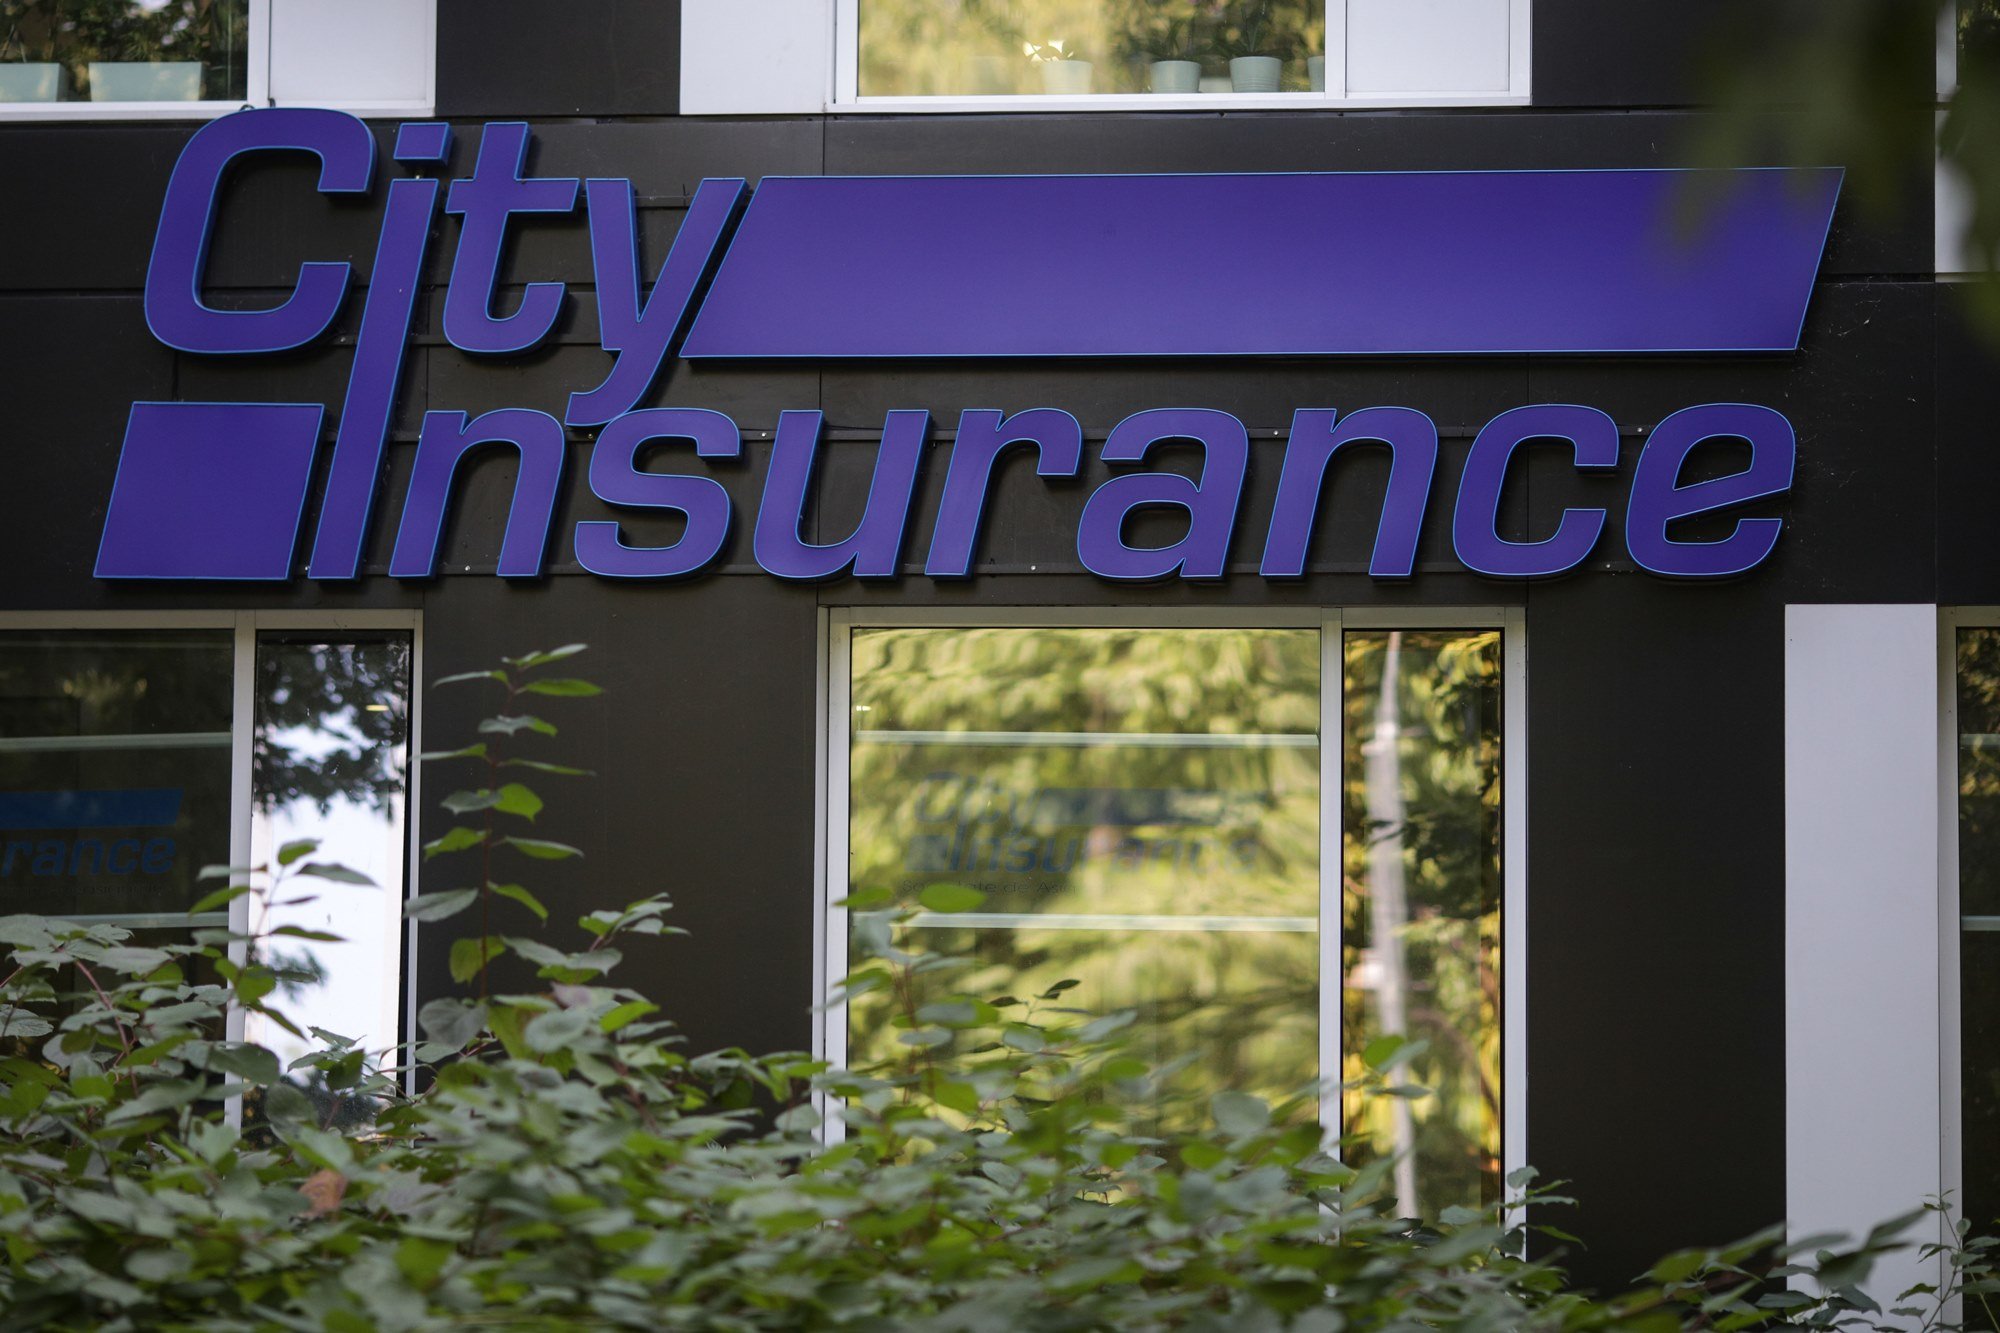 Exclusiv: Cum și-a tras City Insurance o țeapă de zeci de milioane